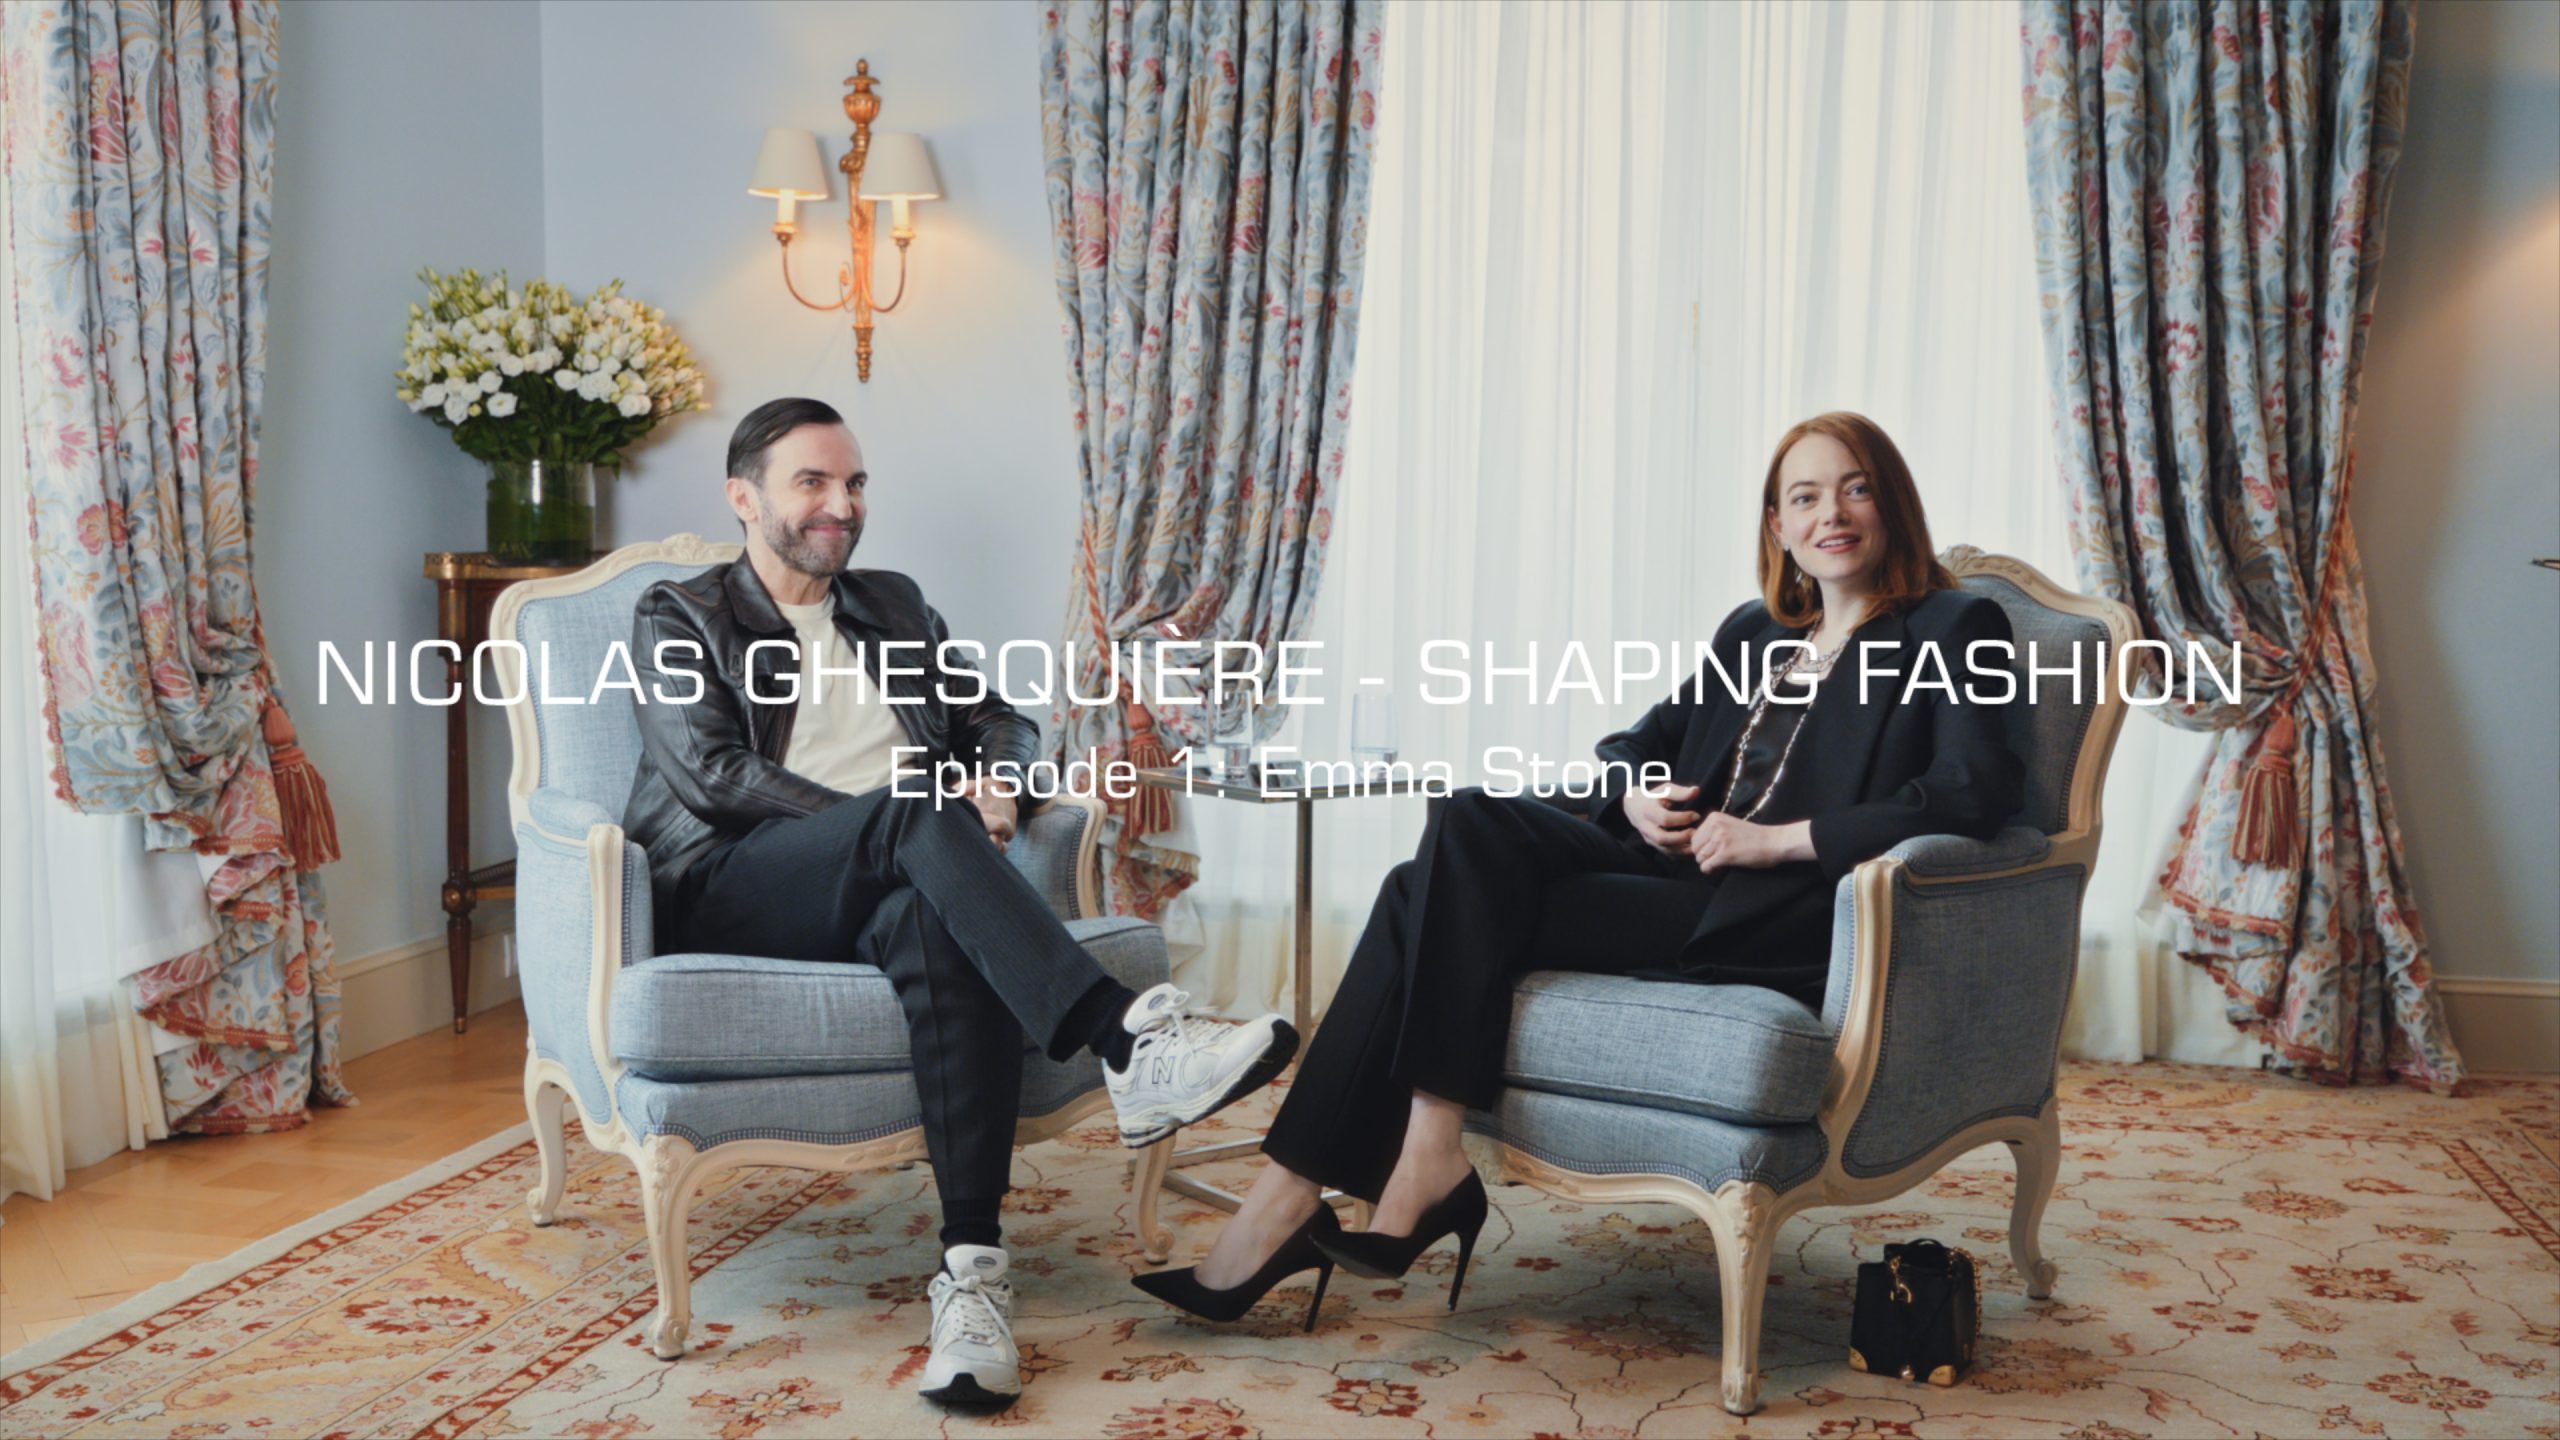 Louis Vuitton Unveils New Series Featuring Nicolas Ghesquière